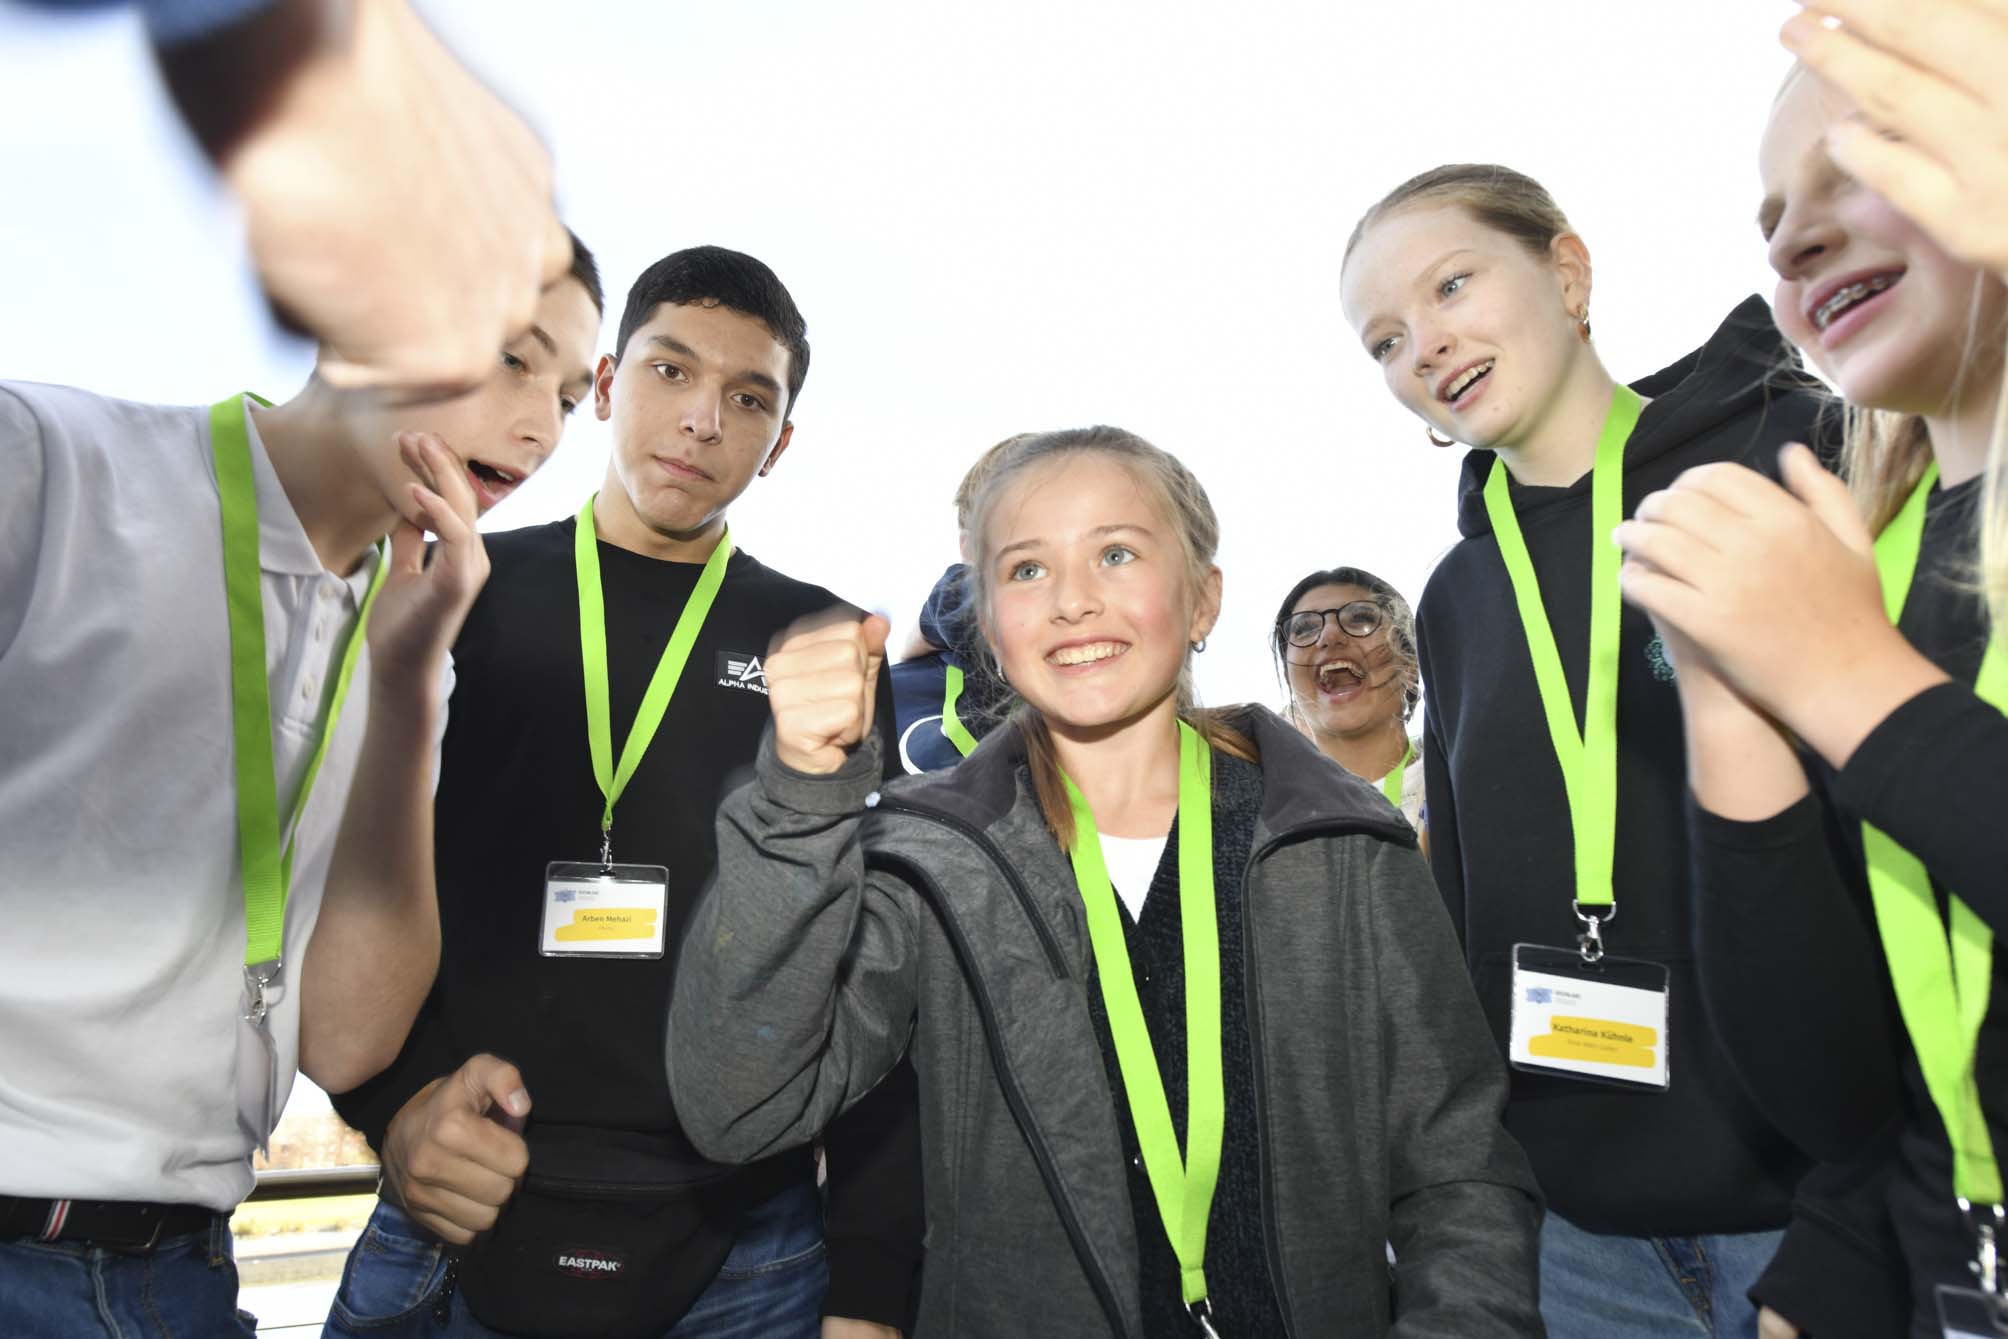 Jugendliche, die alle ein Namensschild an einem grünen Band um den Hals tragen, stehen in einer Gruppe zusammen